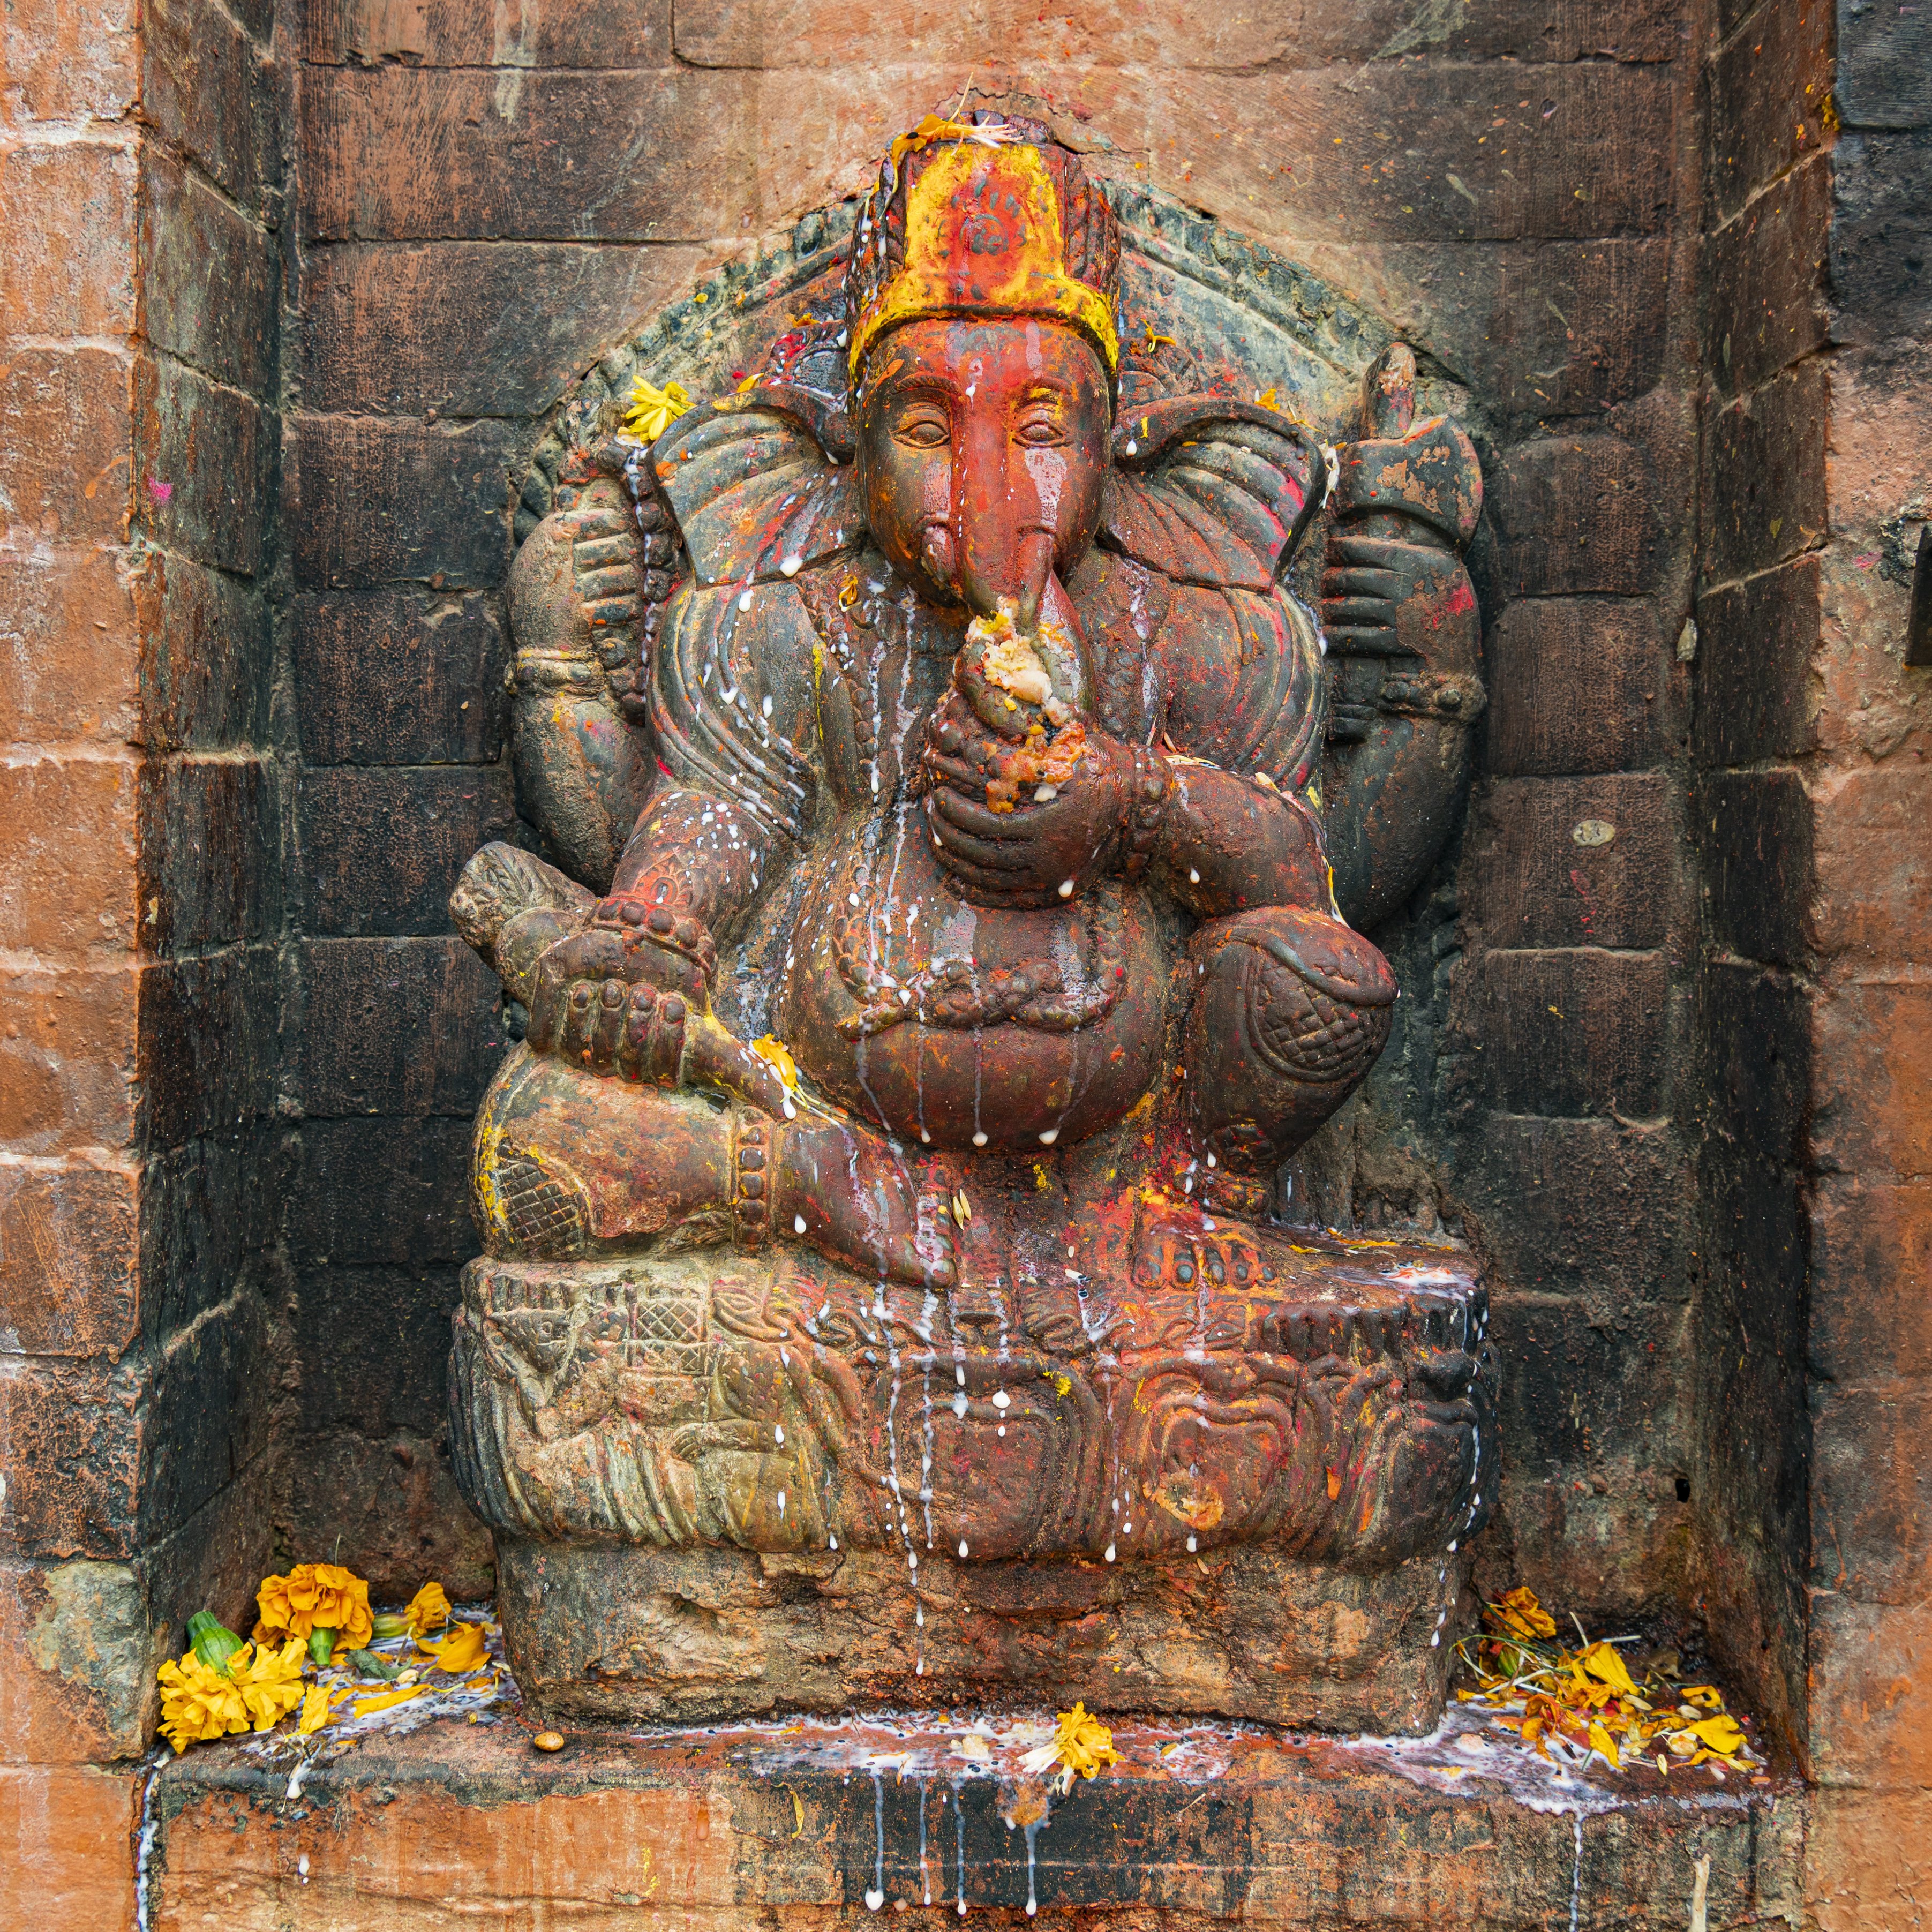 Shri Ganesh